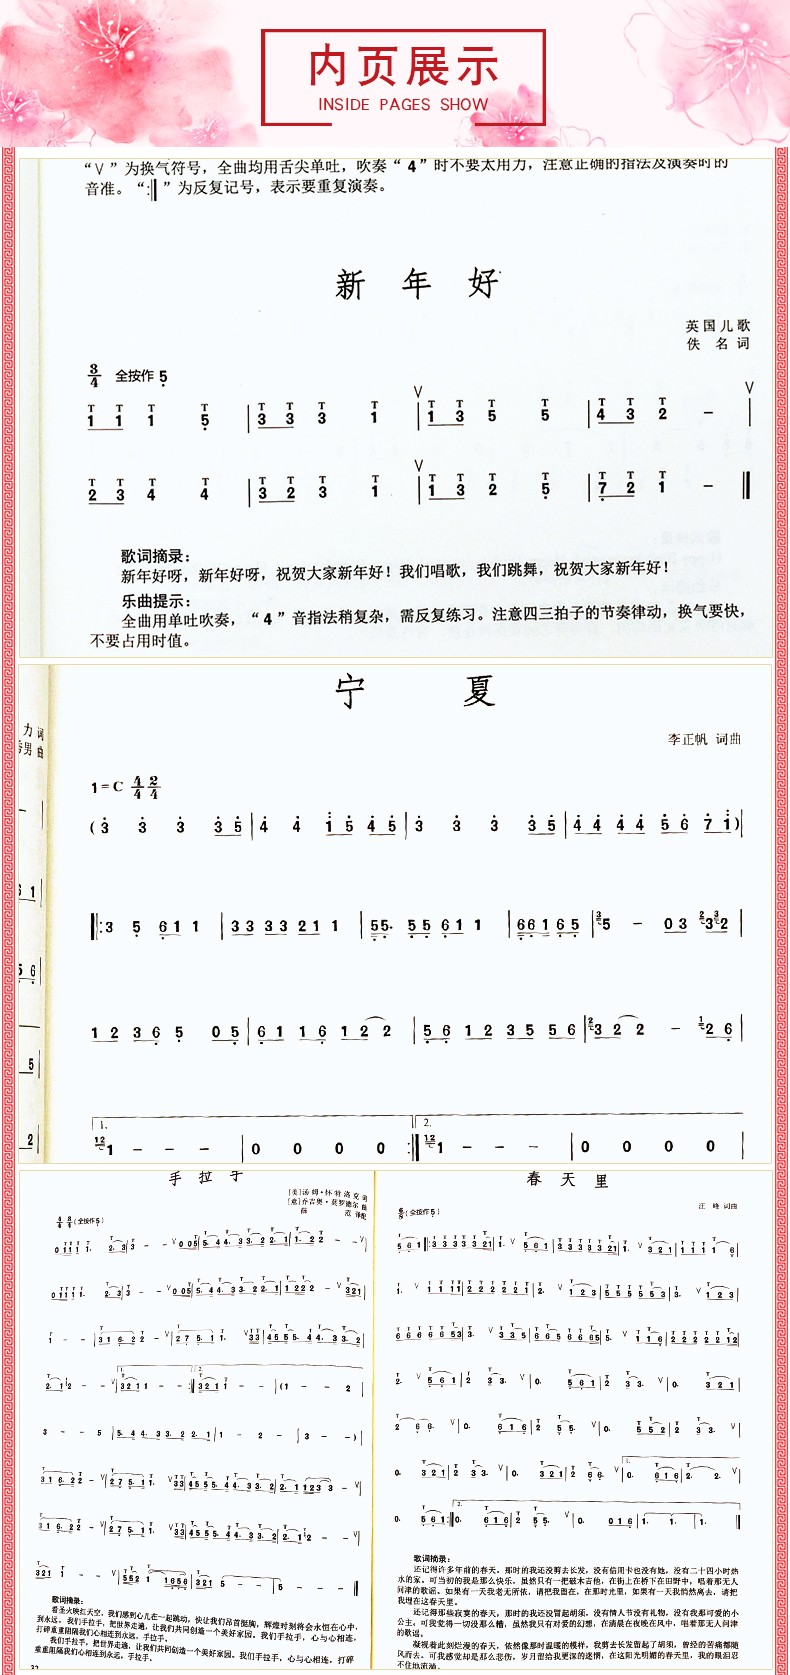 惠典正版葫芦丝流行经典歌曲集 演奏曲目曲谱 吹奏练习乐谱 民乐吹奏